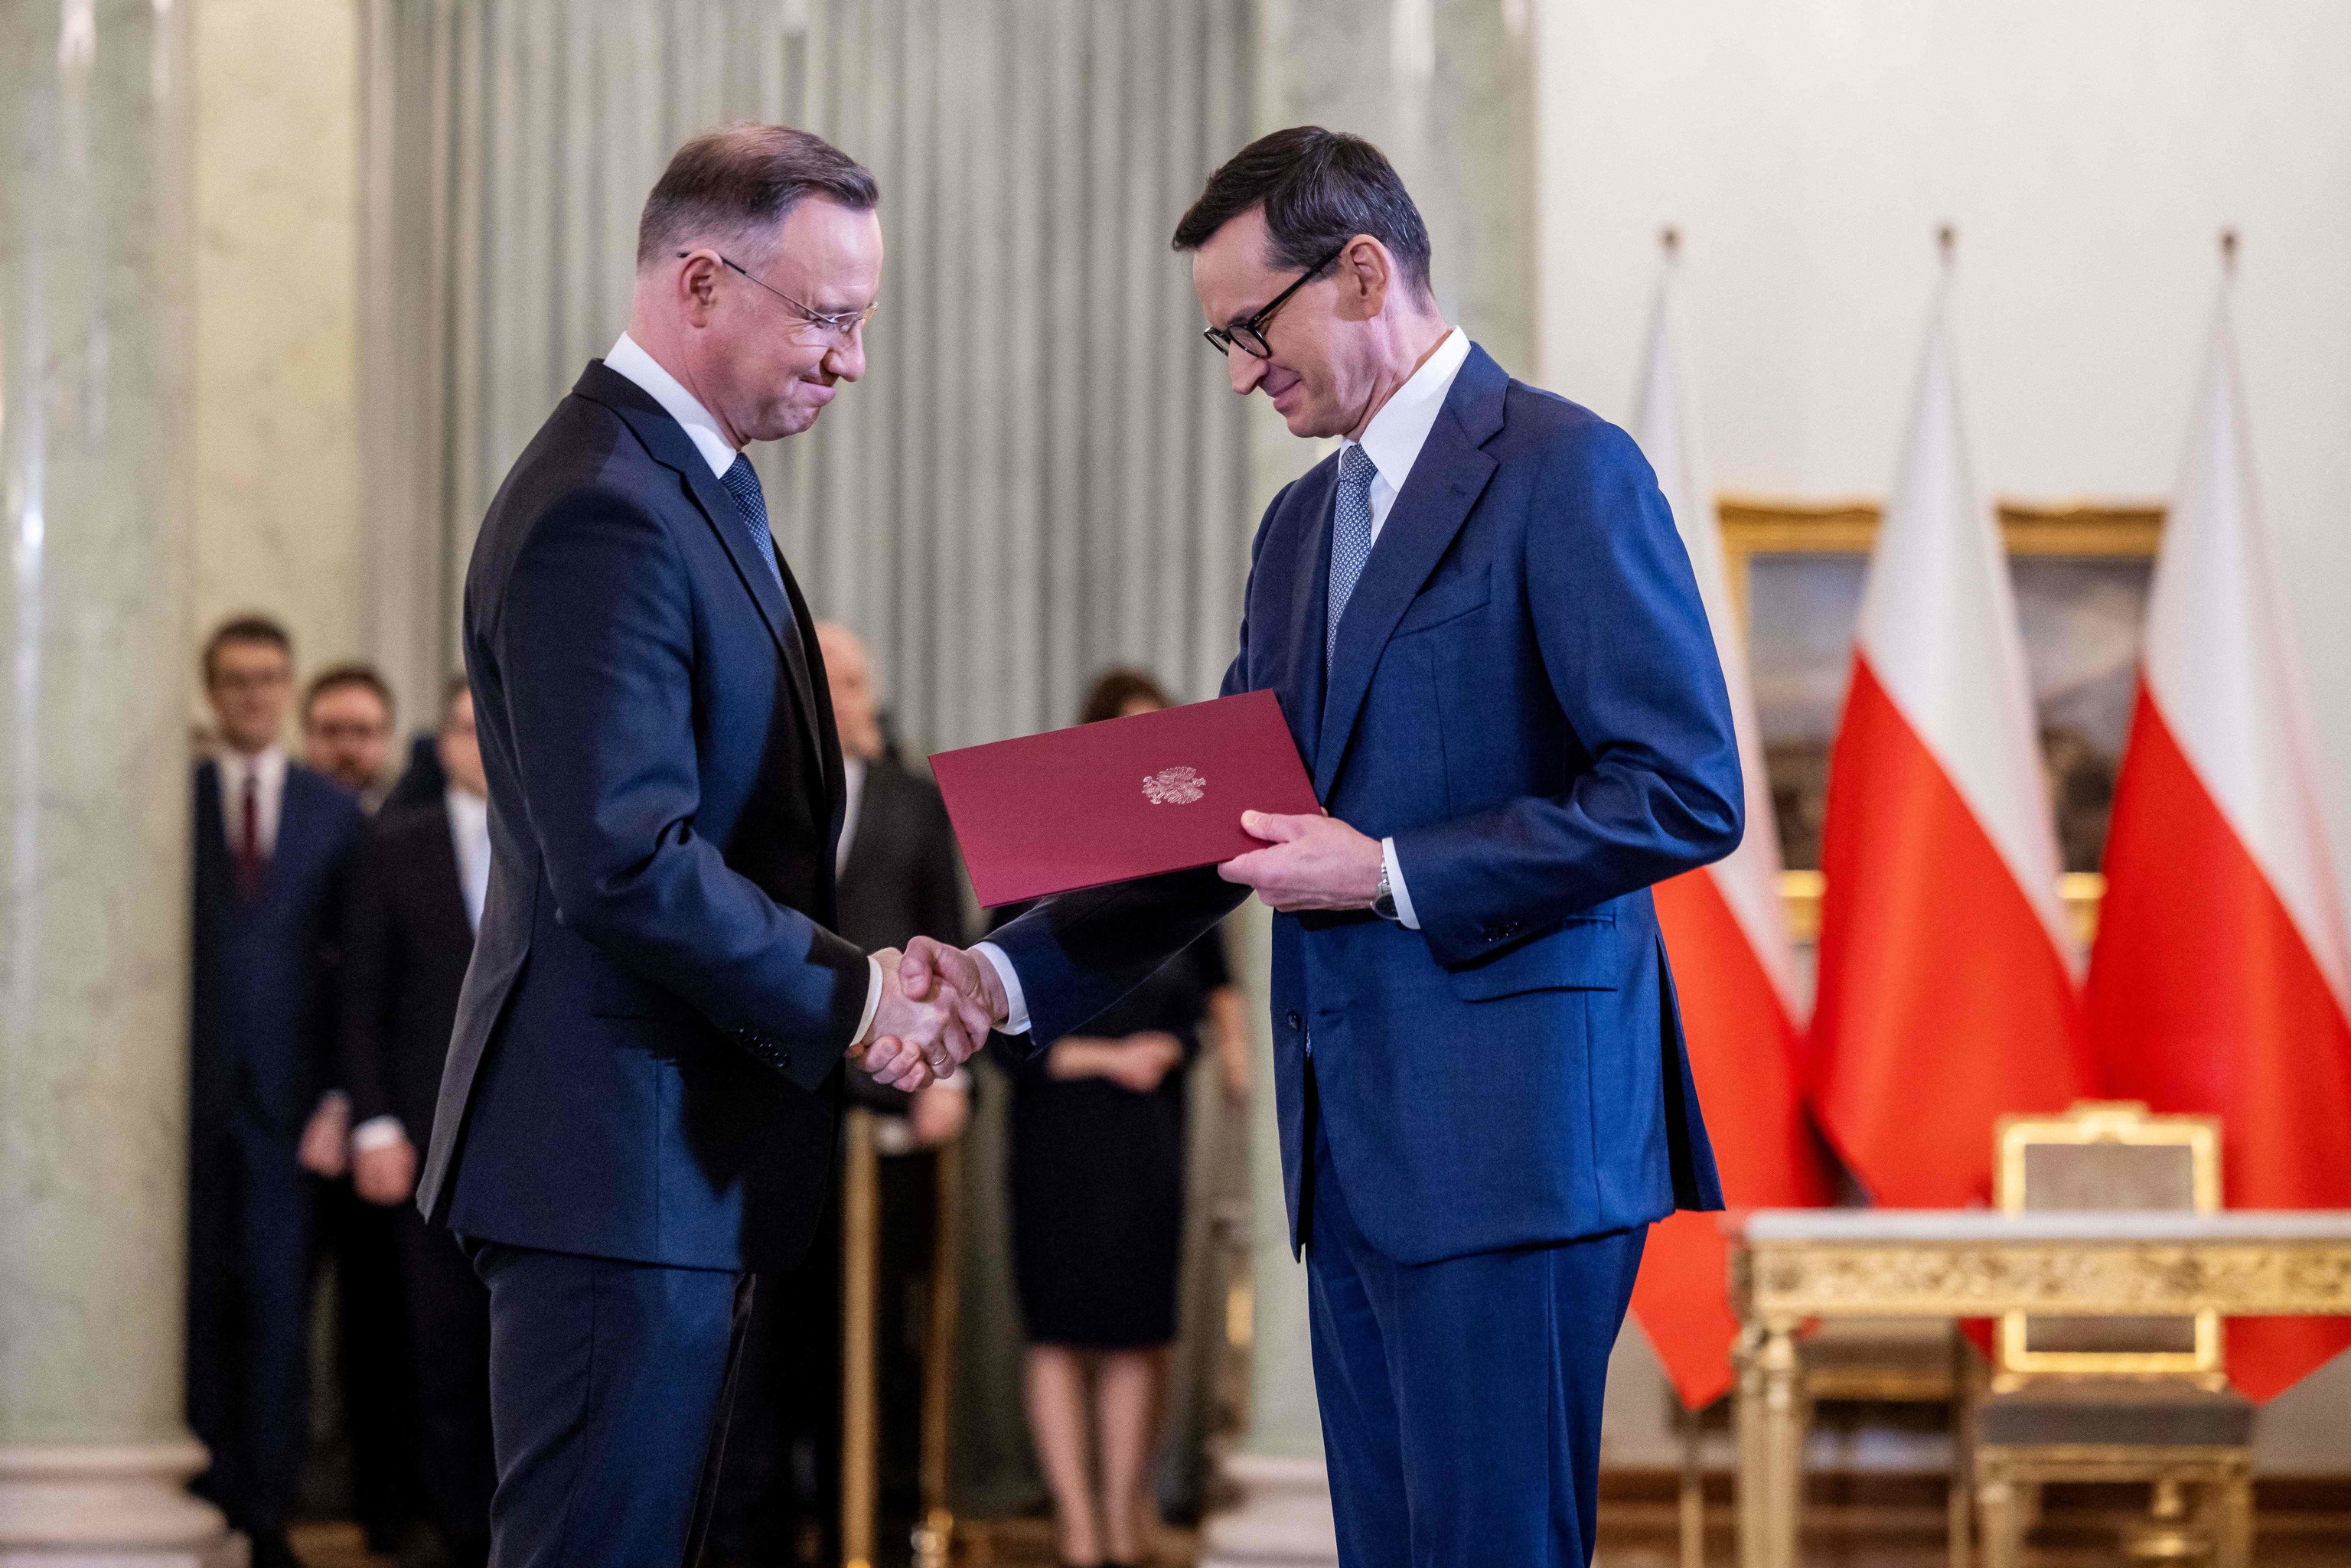 El presidente polaco toma juramento a un Gobierno que no existirá dentro de dos semanas